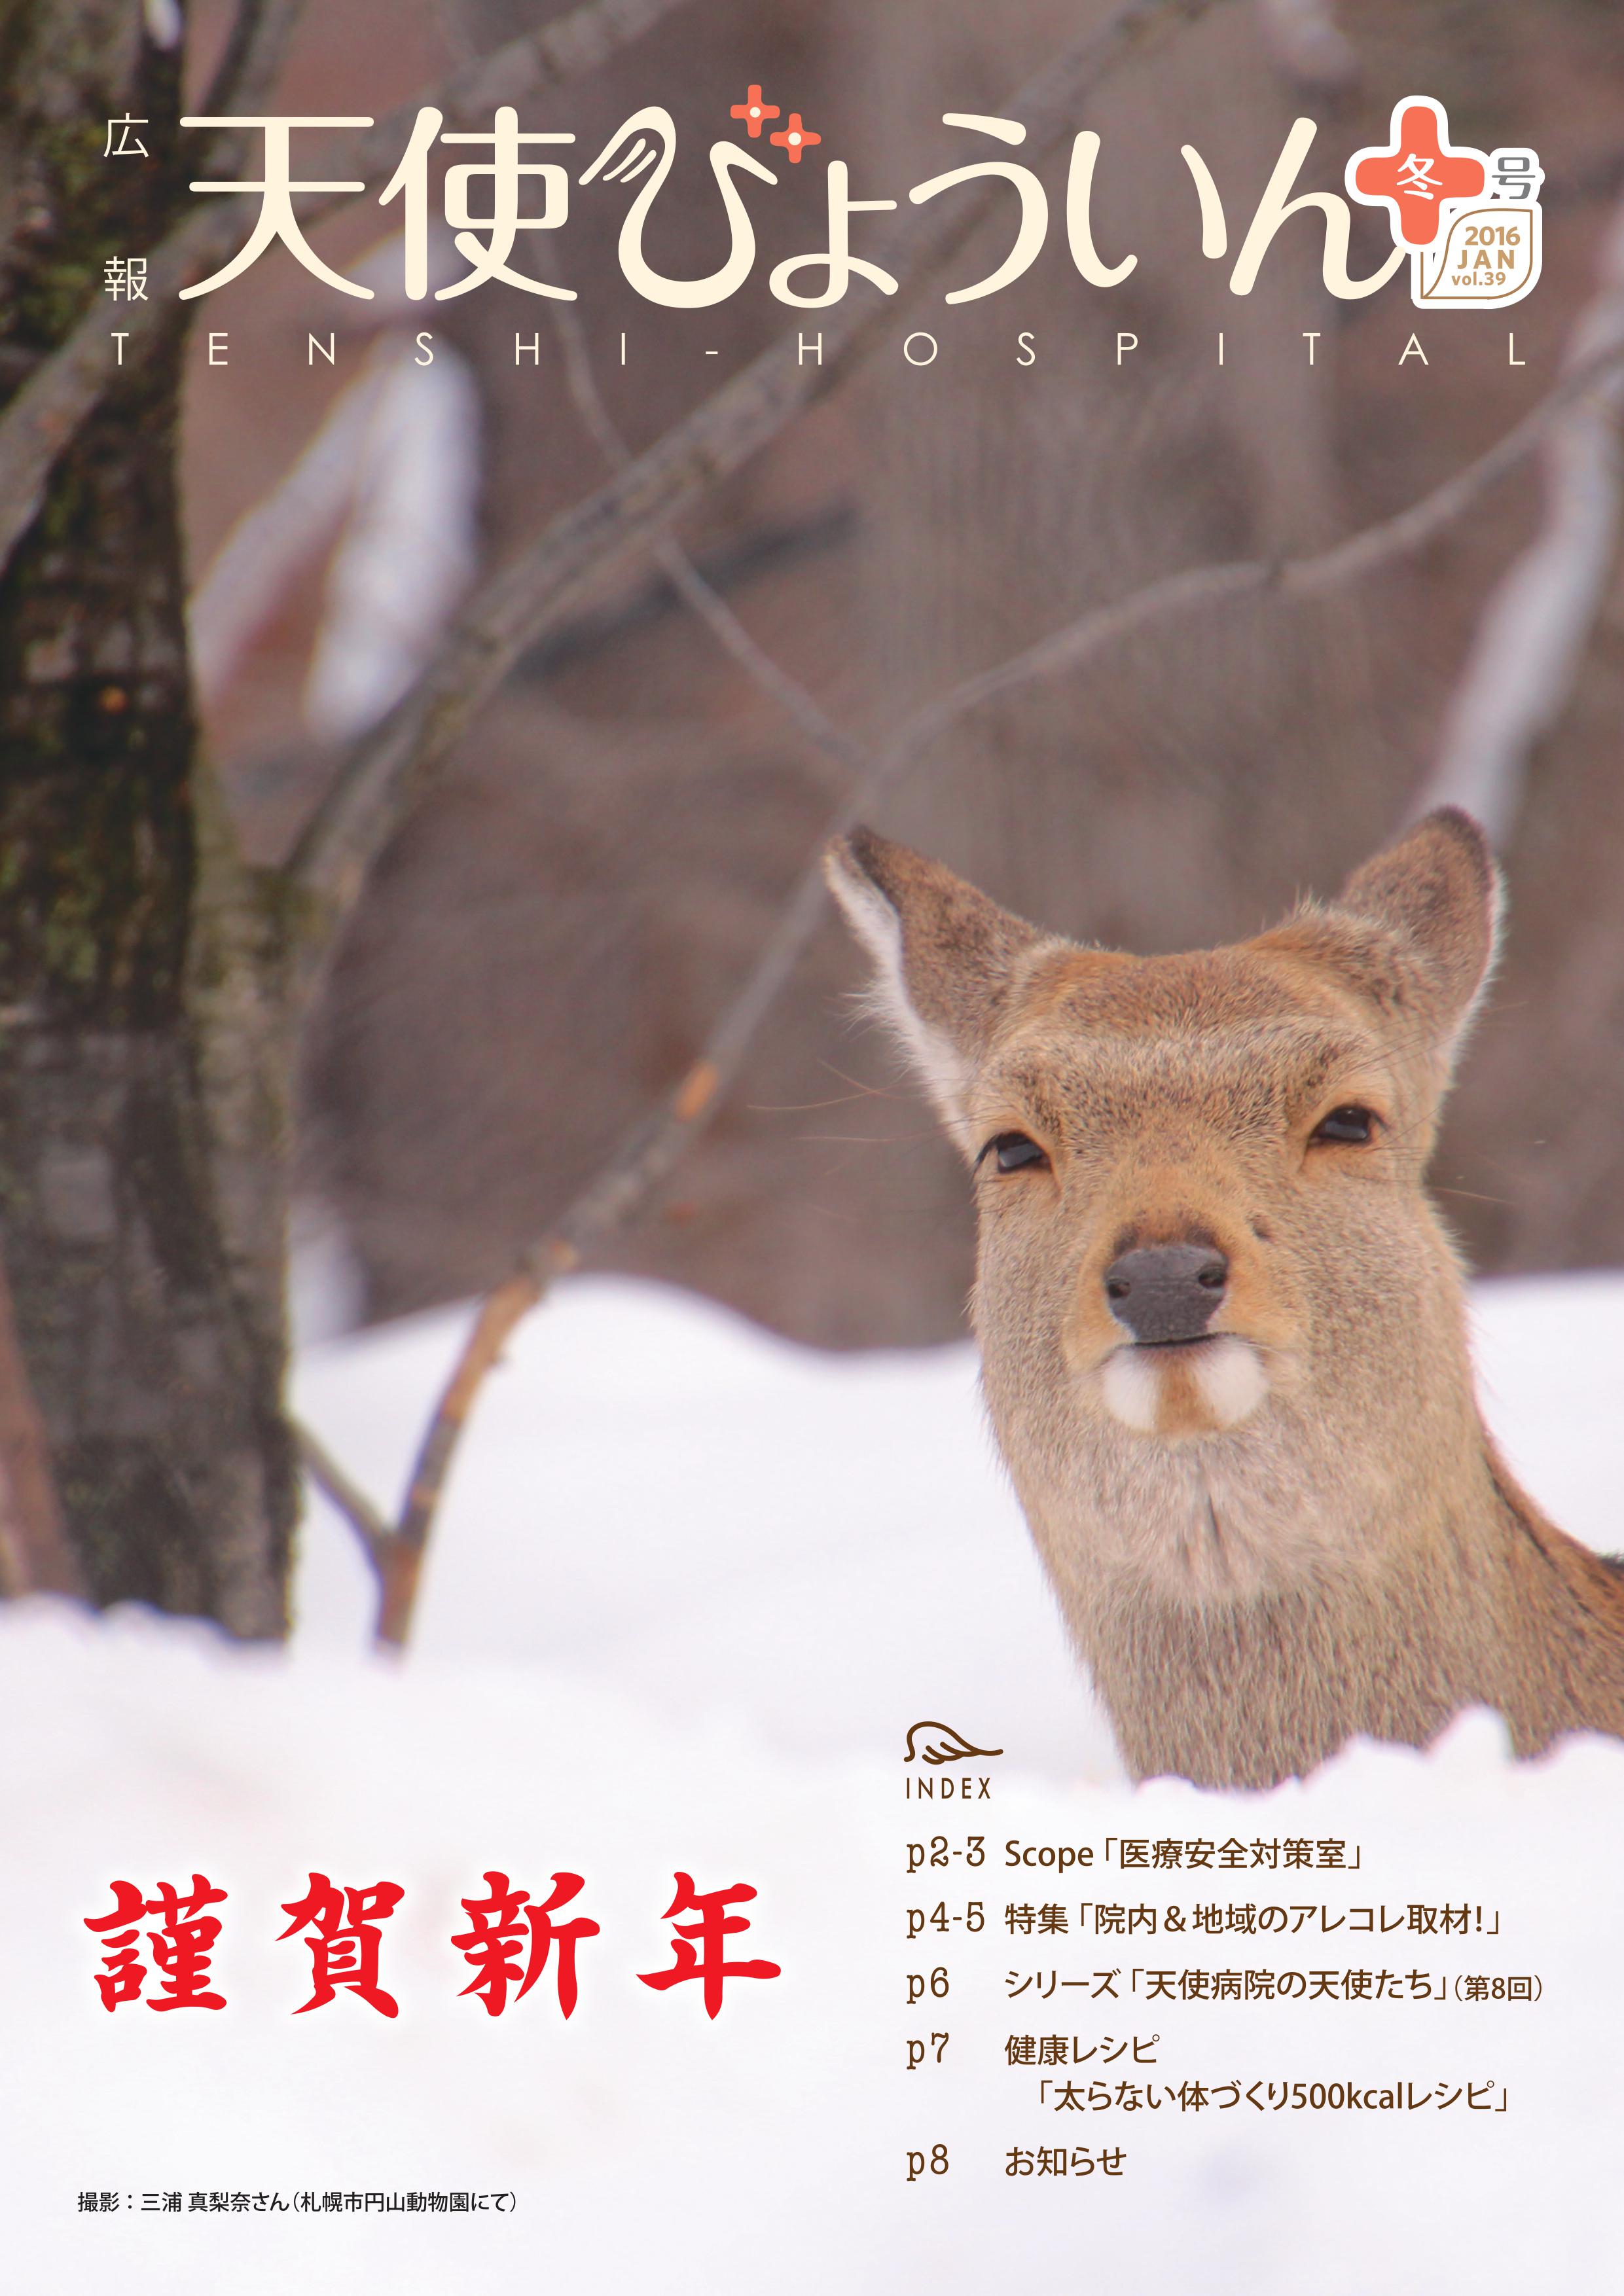 2015広報誌冬号(Vol.39)_表紙.jpg